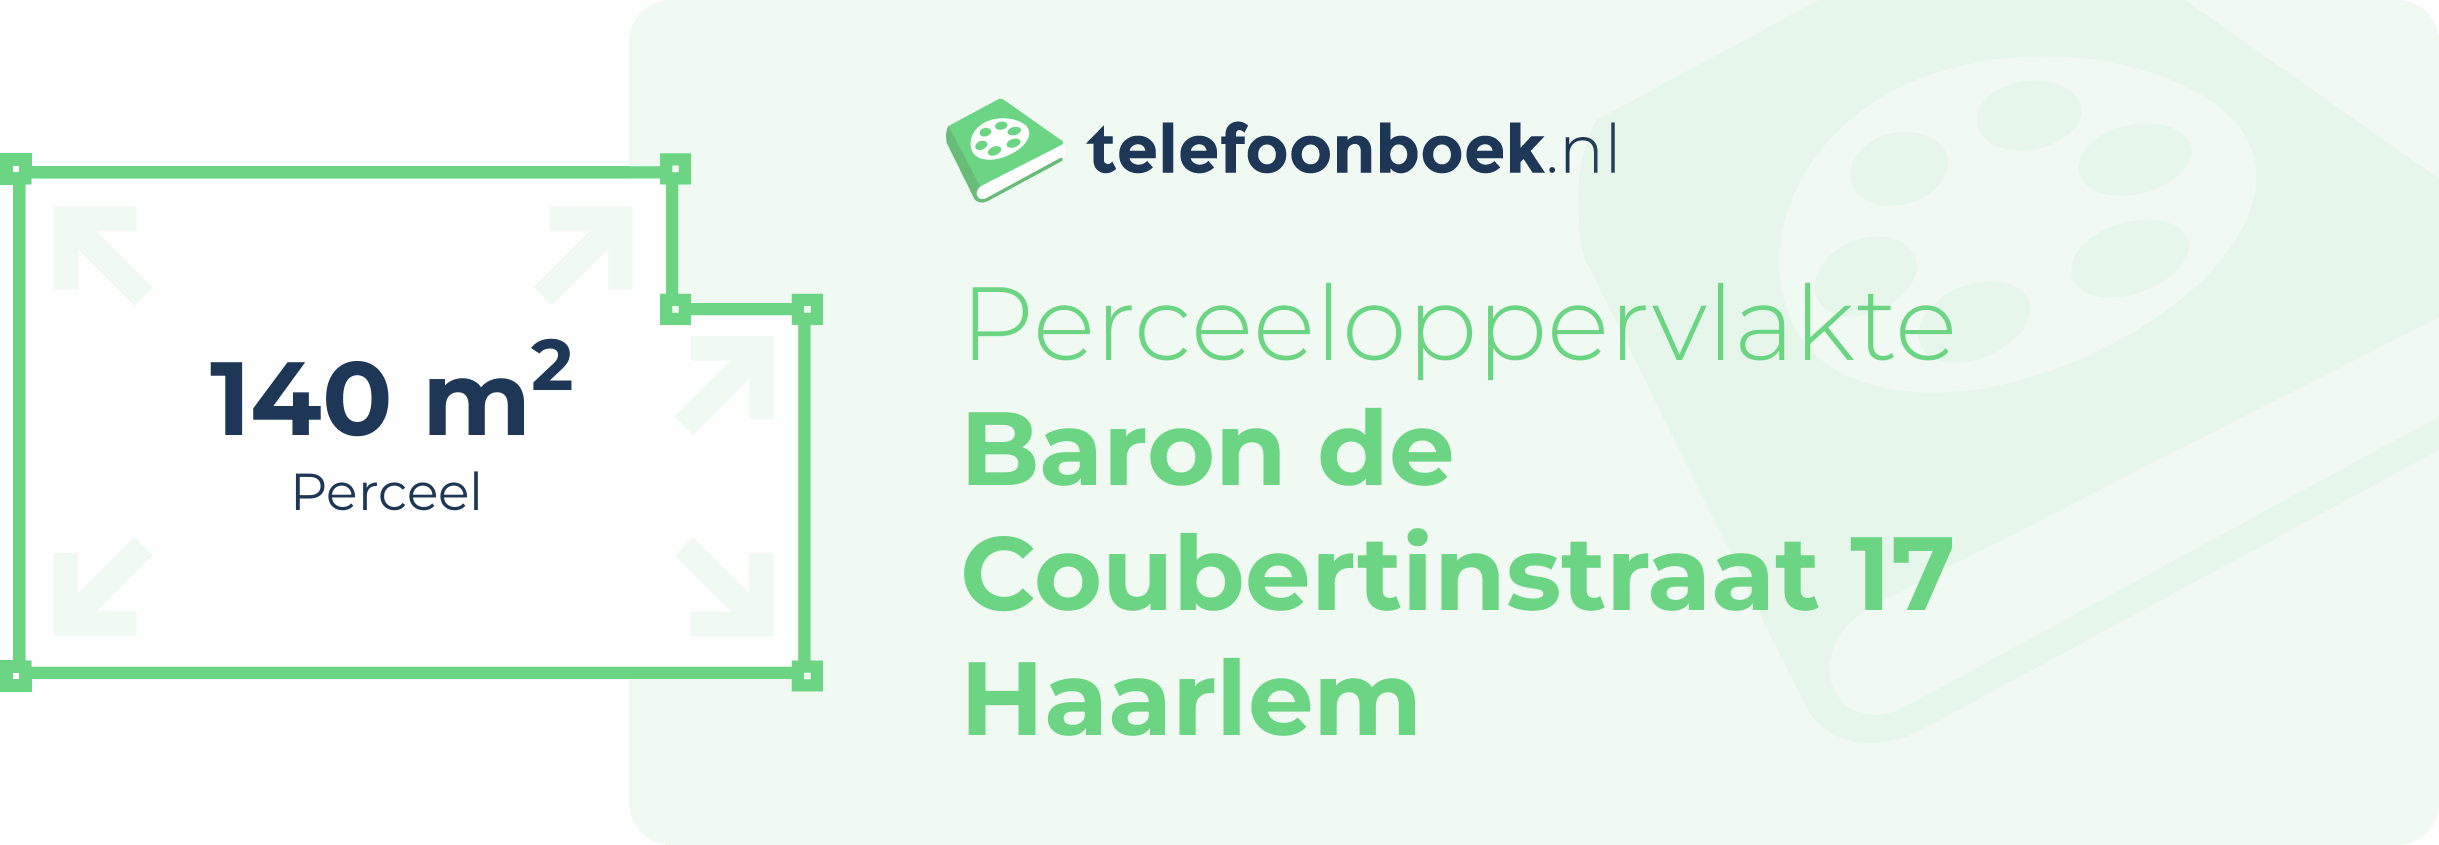 Perceeloppervlakte Baron De Coubertinstraat 17 Haarlem